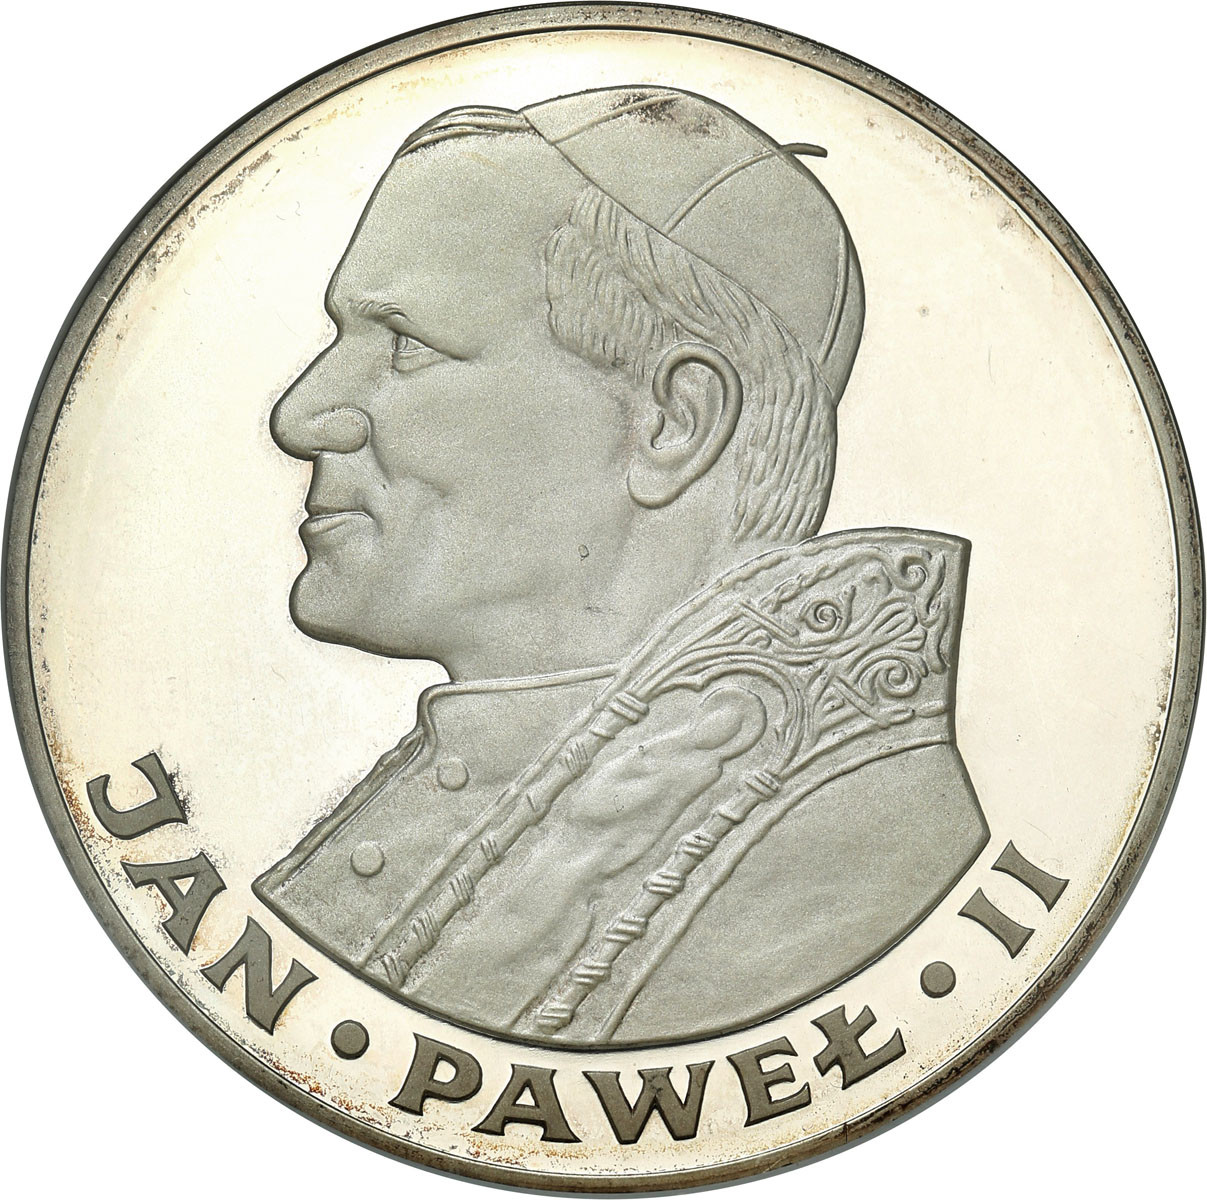 PRL. 200 złotych 1982 Jan Paweł II stempel lustrzany - RZADKIE